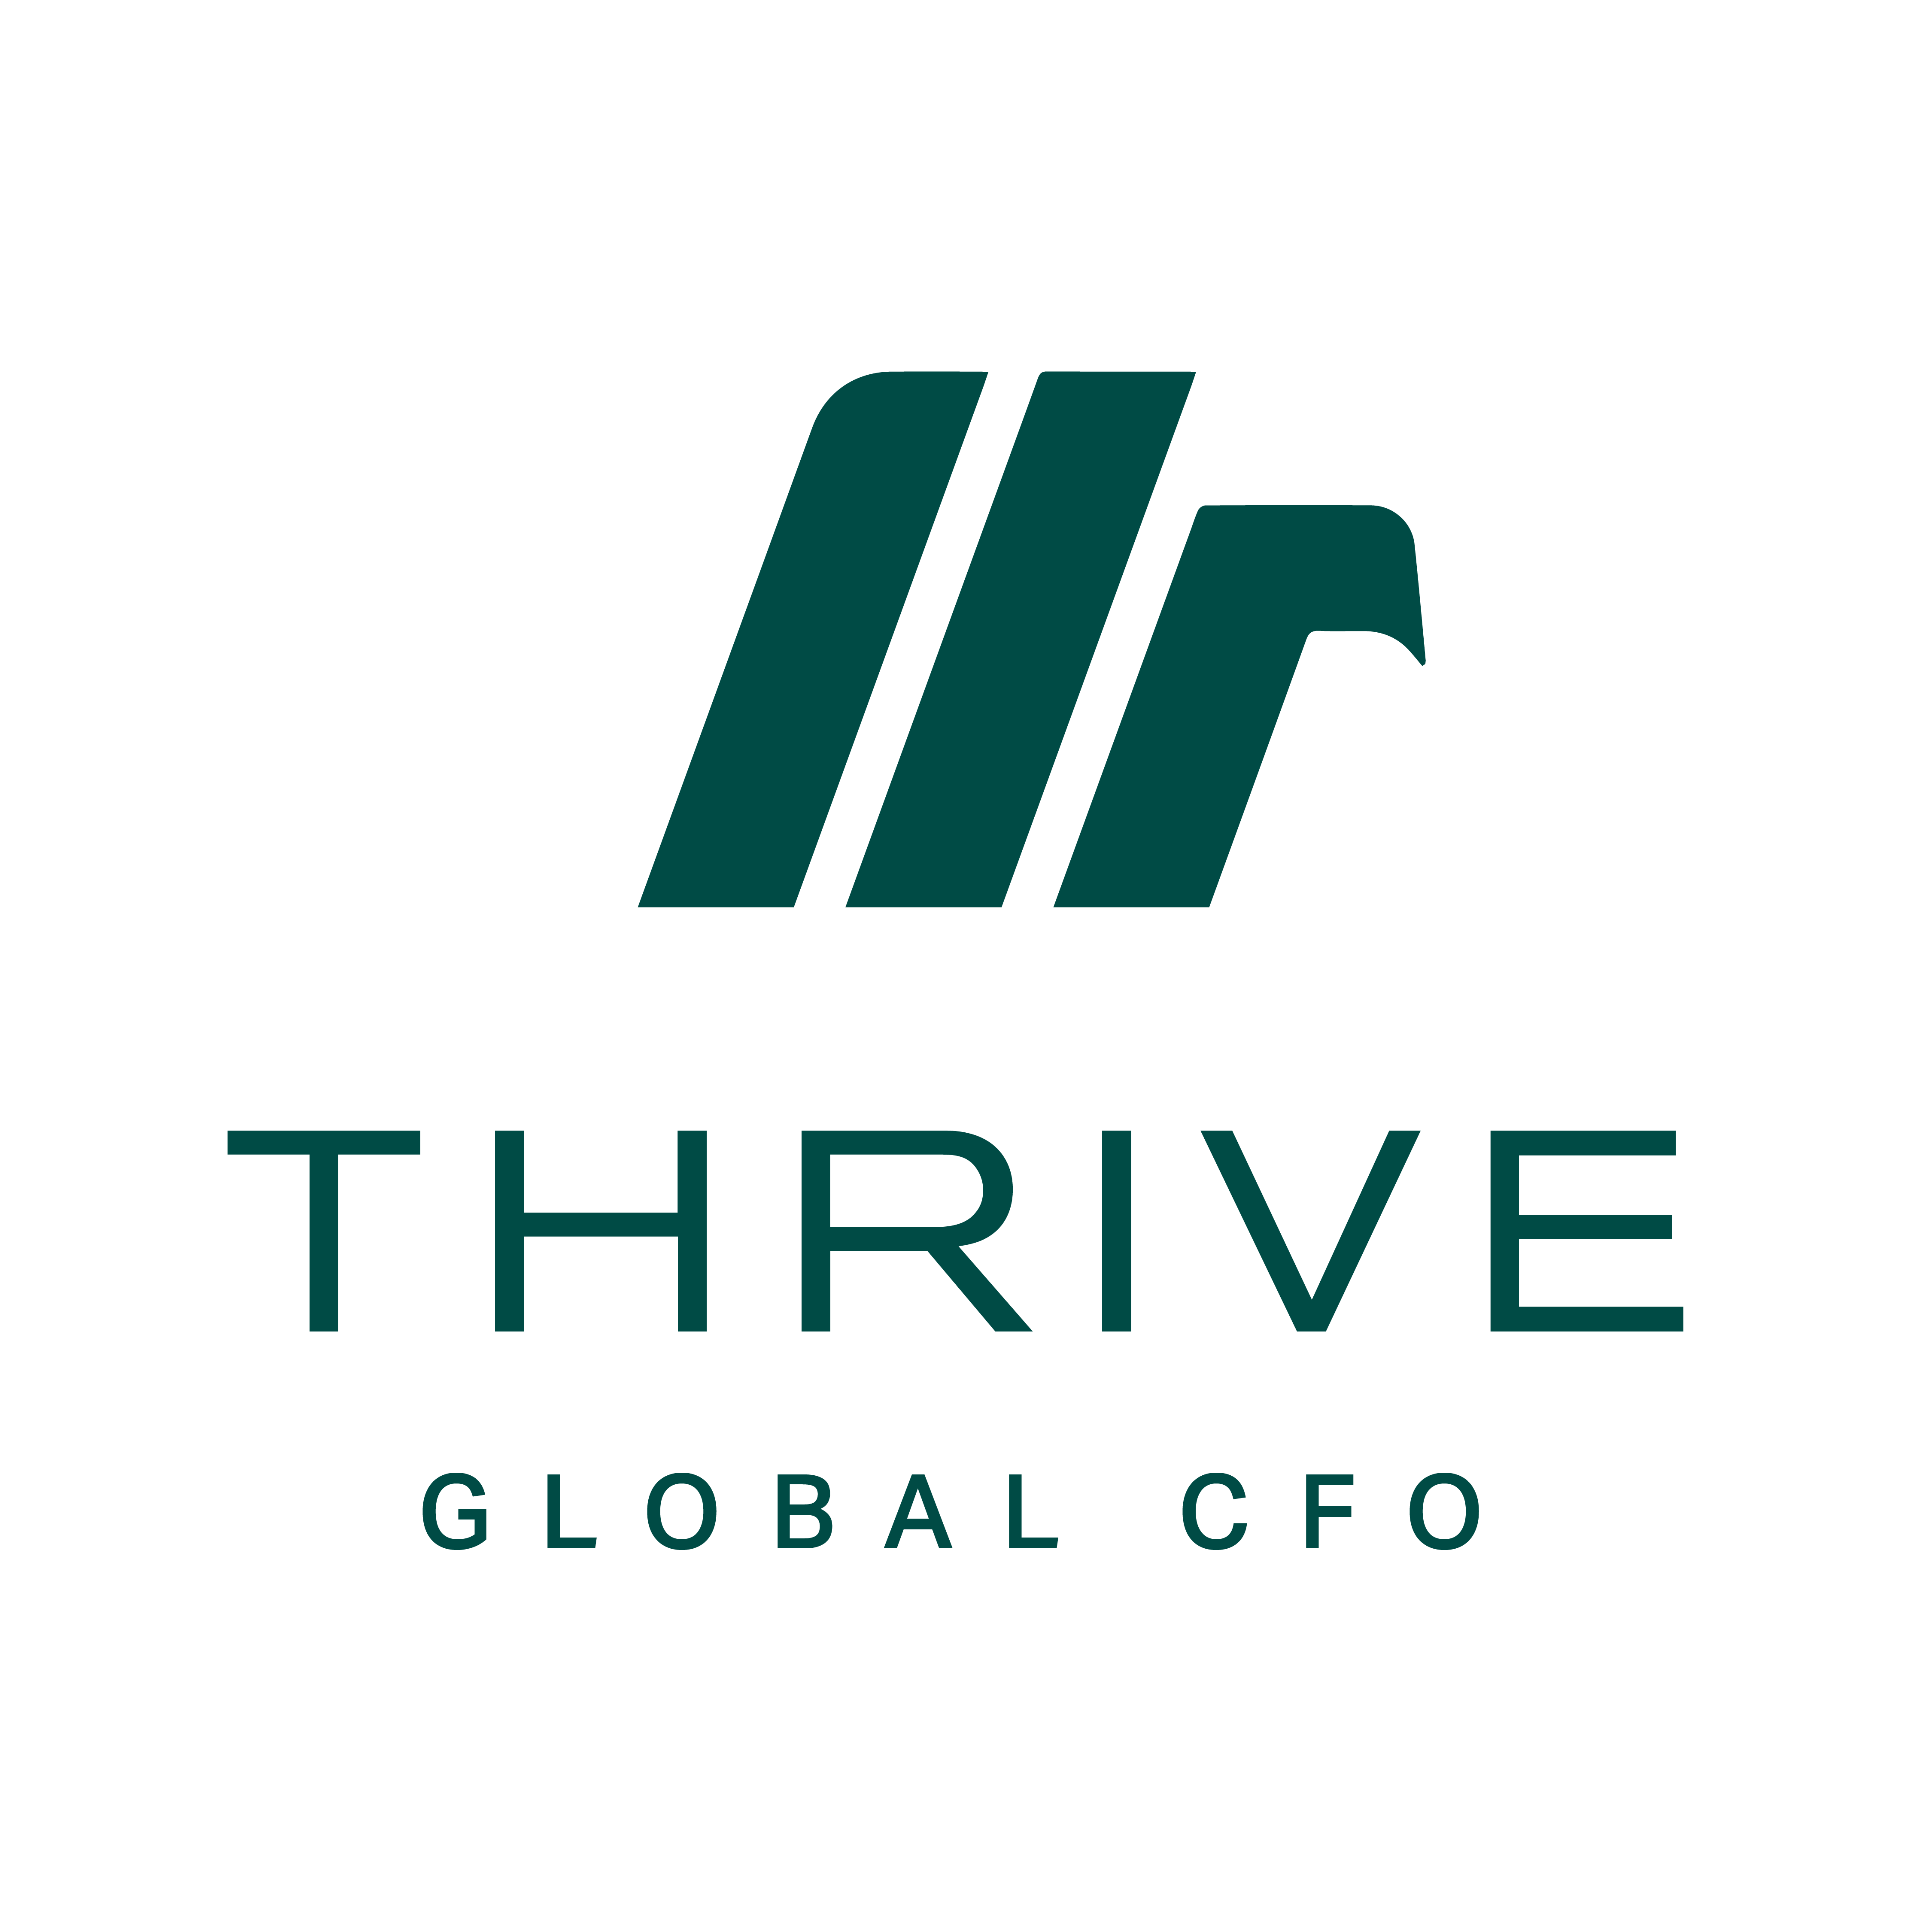 THRIVE Global CFO